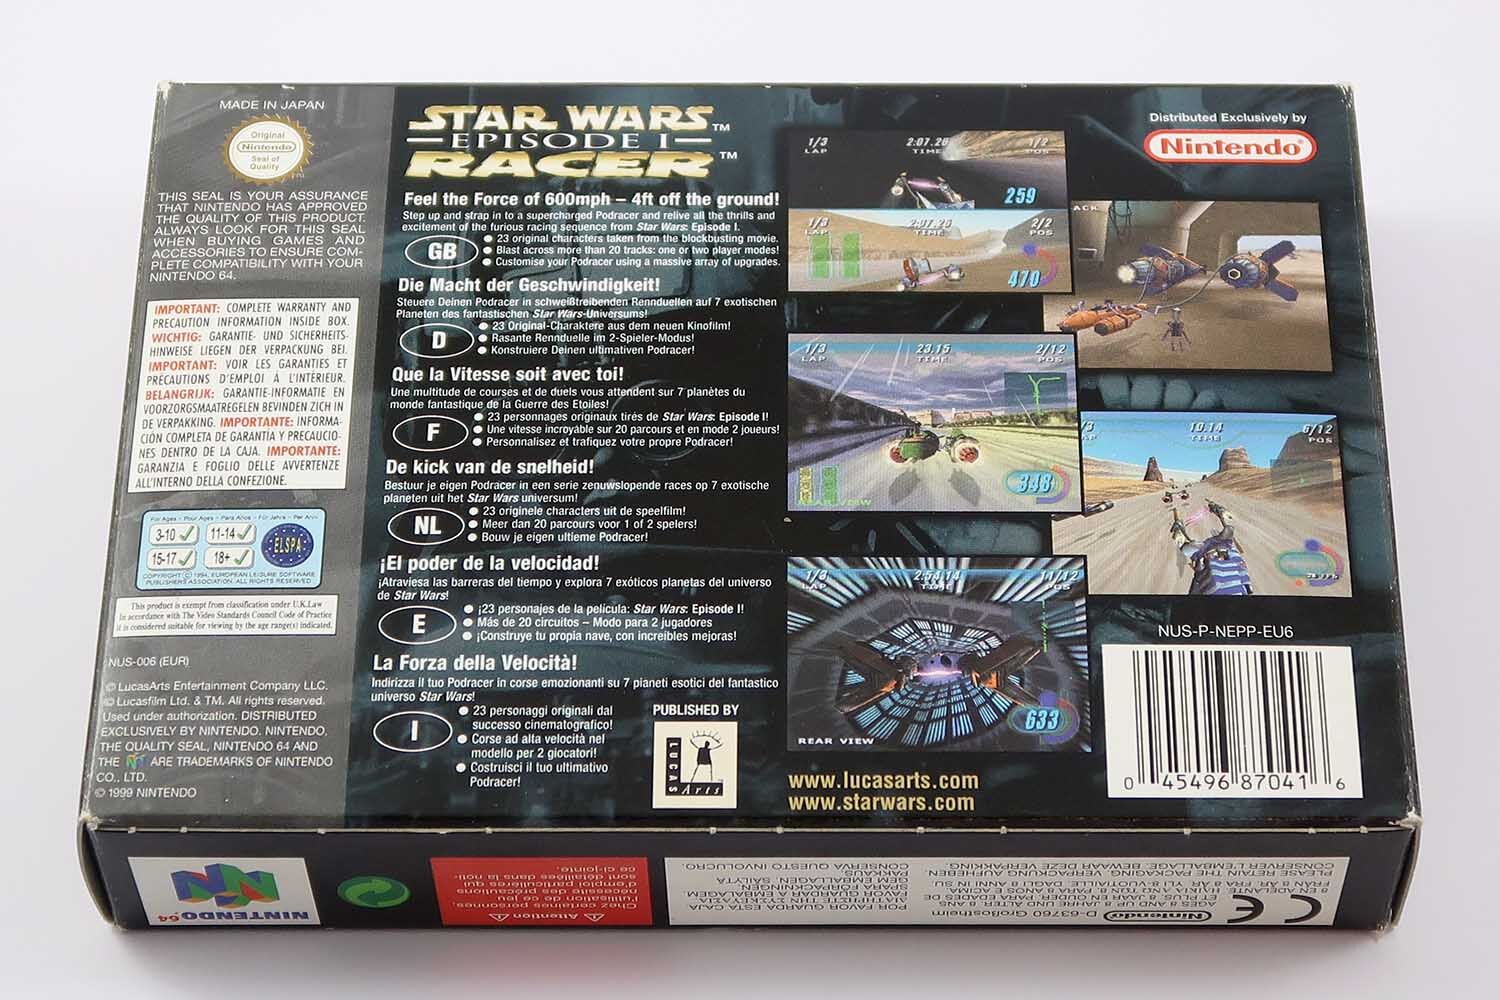 Star Wars Episode 1 Racer - N64